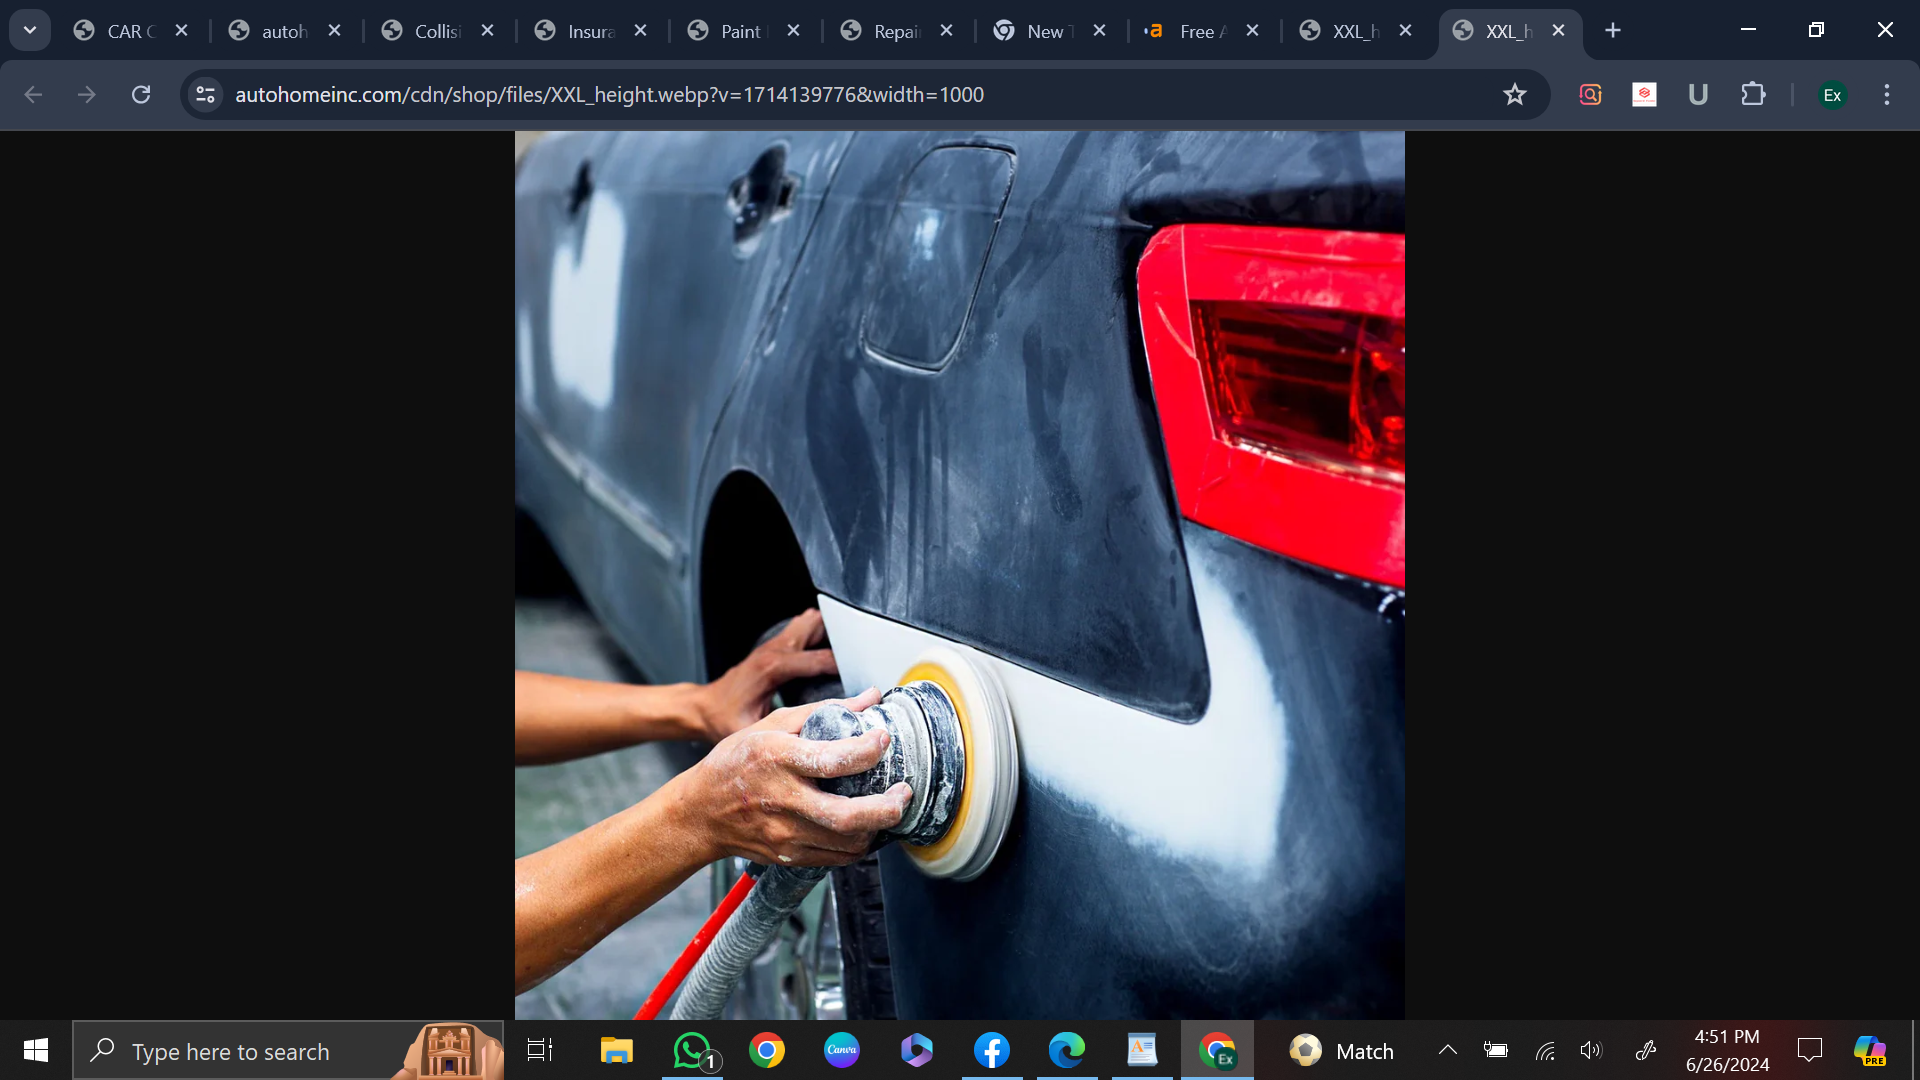 a person using a machine to polish a car